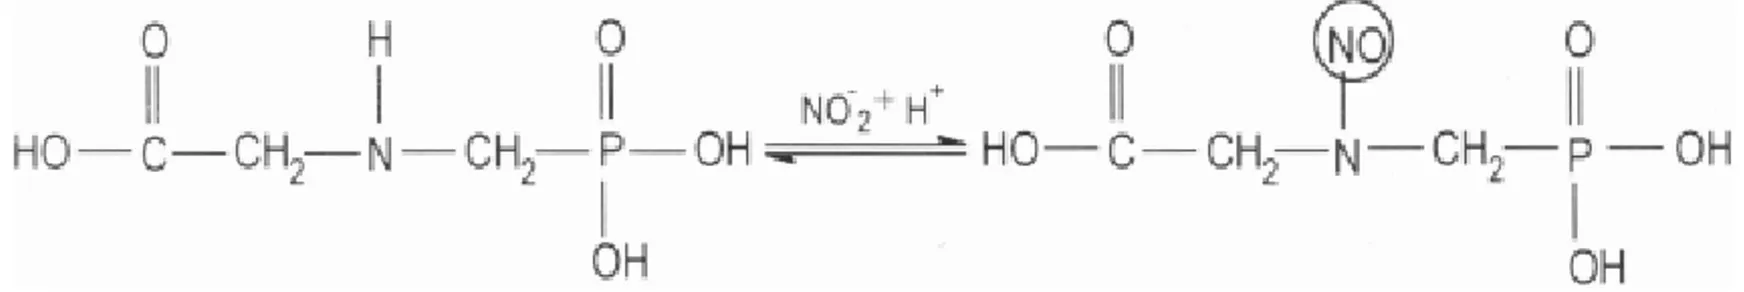 FIGURA 4. Reação de nitrosação do glyphosate para determinação voltamétrica.